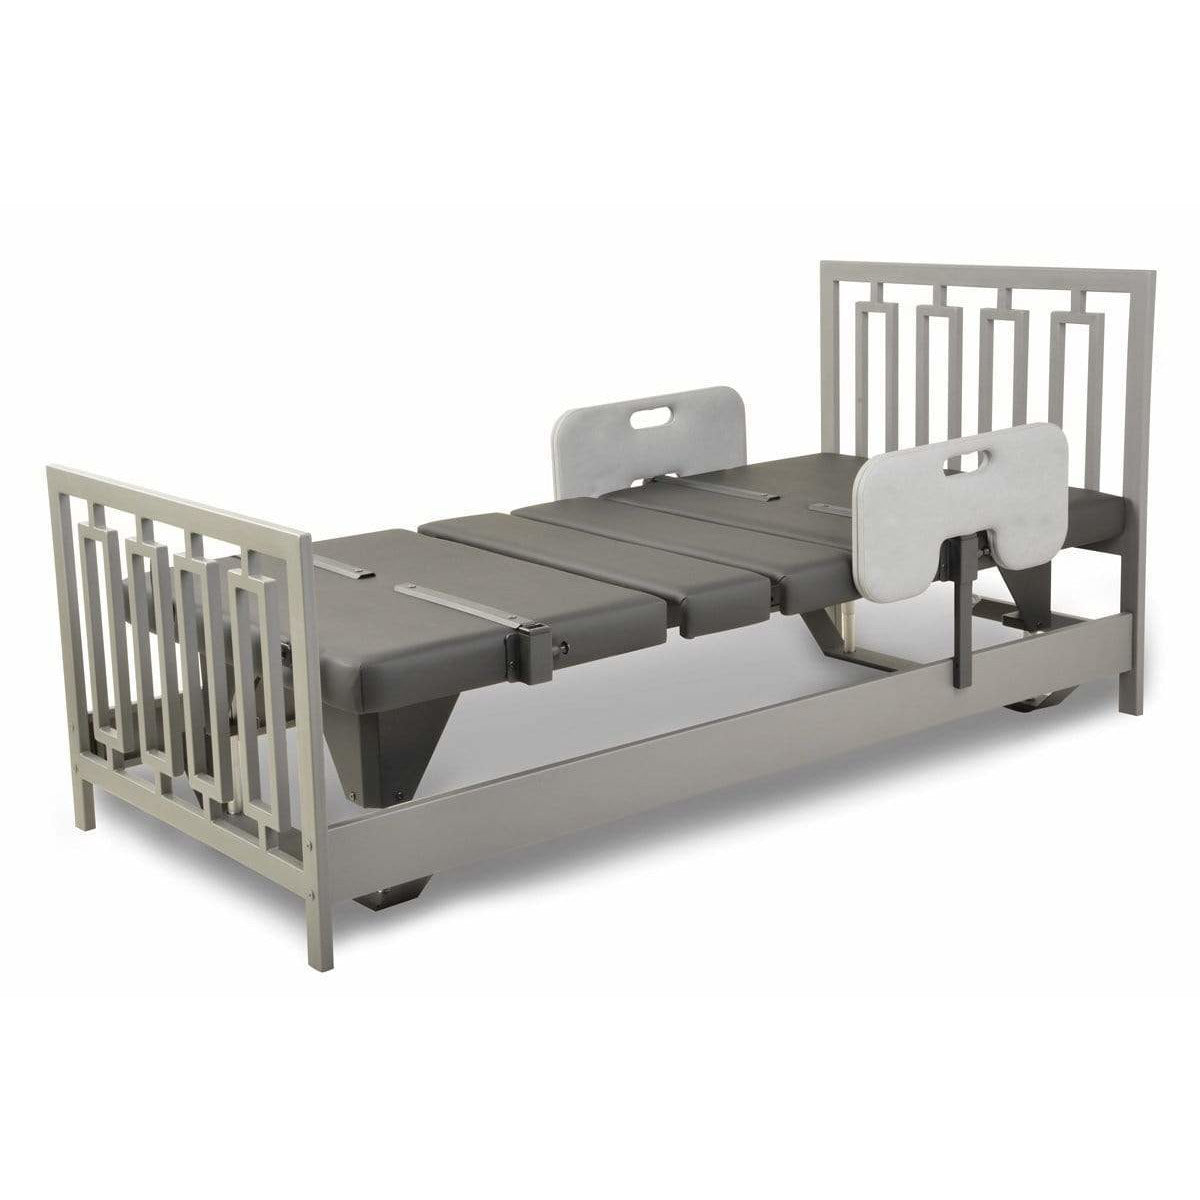 Assured Comforts Hi-Low Adjustable Beds Signature Series Hi-Low Adjustable Beds by Assured Comfort®